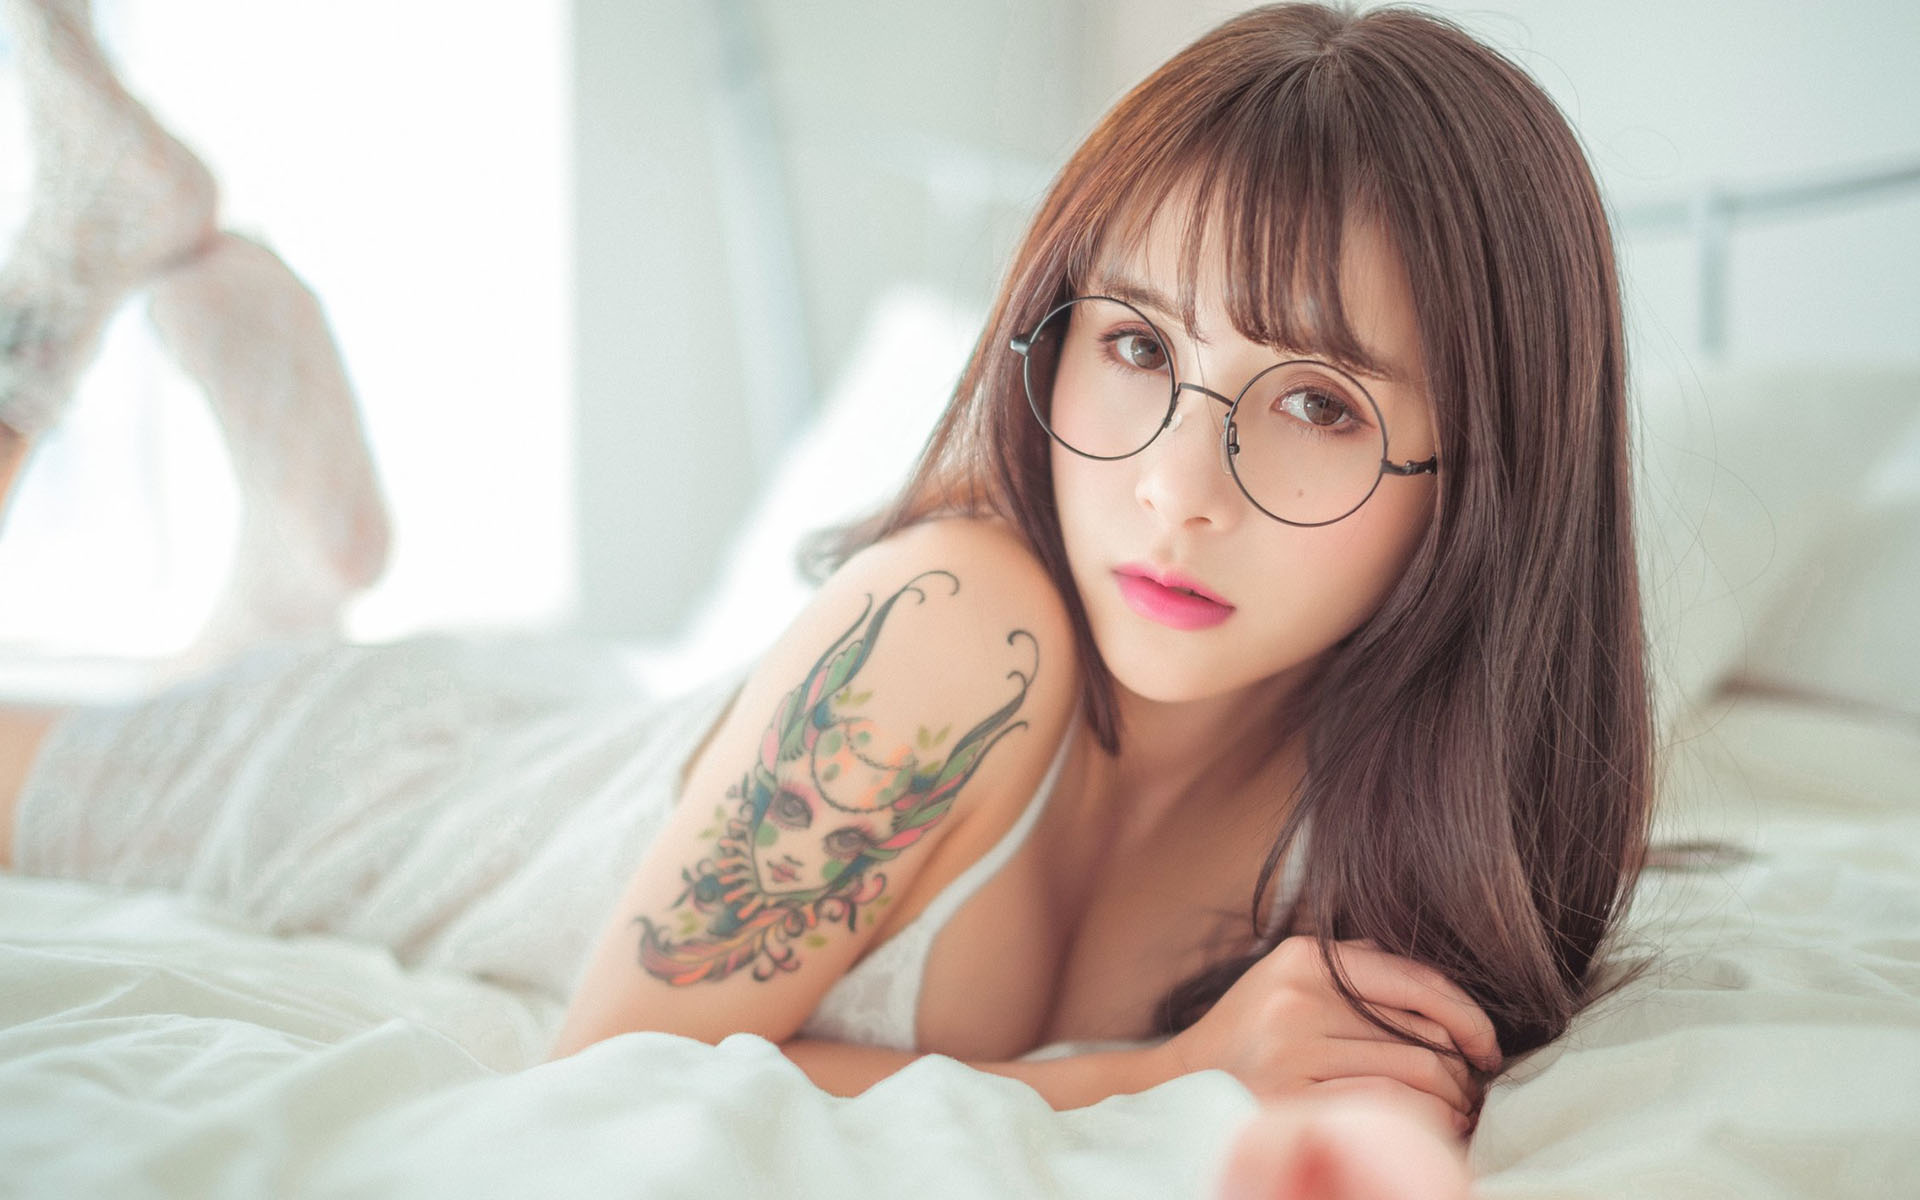 Asian Women Xiamei Jiang Model Glasses Lying Down Bed Xia M I Jiang Women With Glasses In Bed 1920x1200